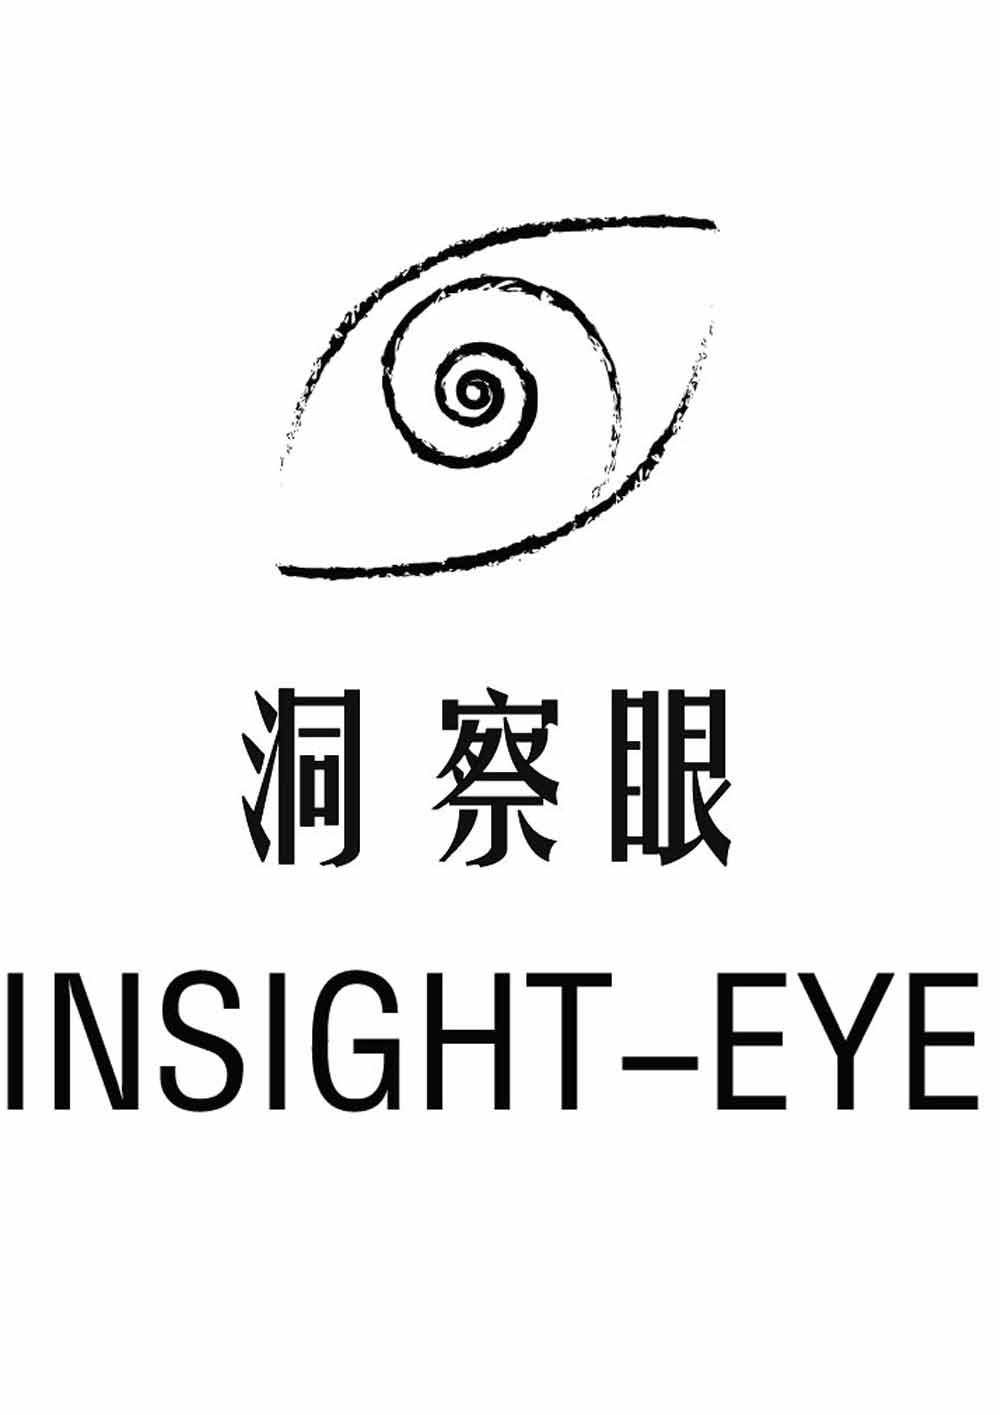 洞察眼 insight-eye 商标公告